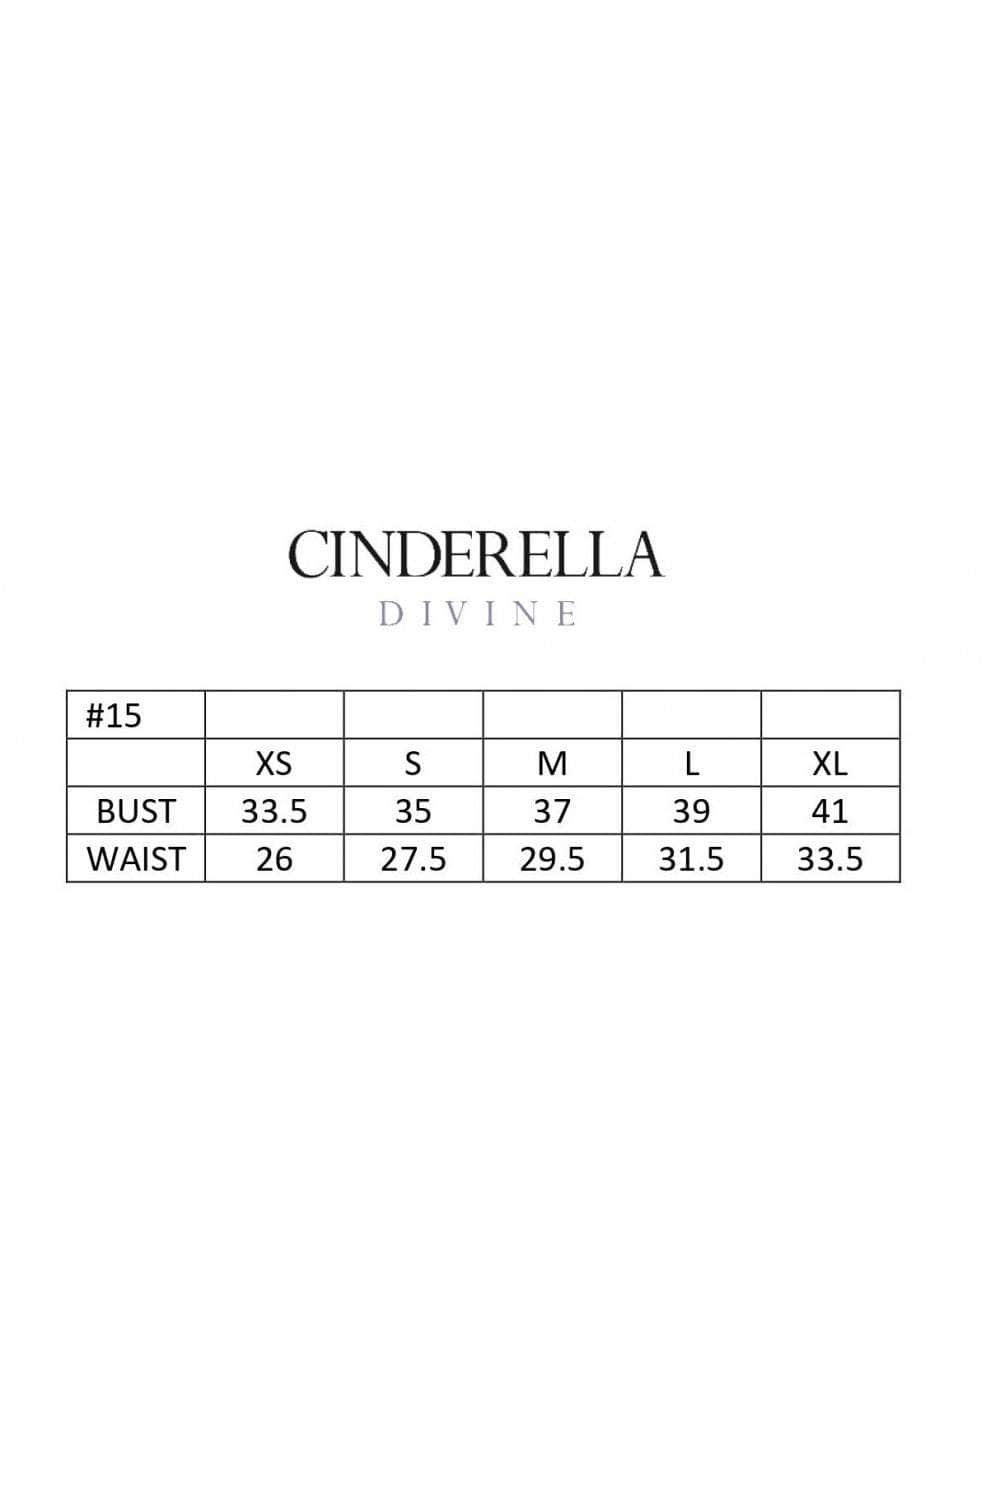 Cinderella Divine BD109 - Cold Shoulder Prom Dress Prom Dresses